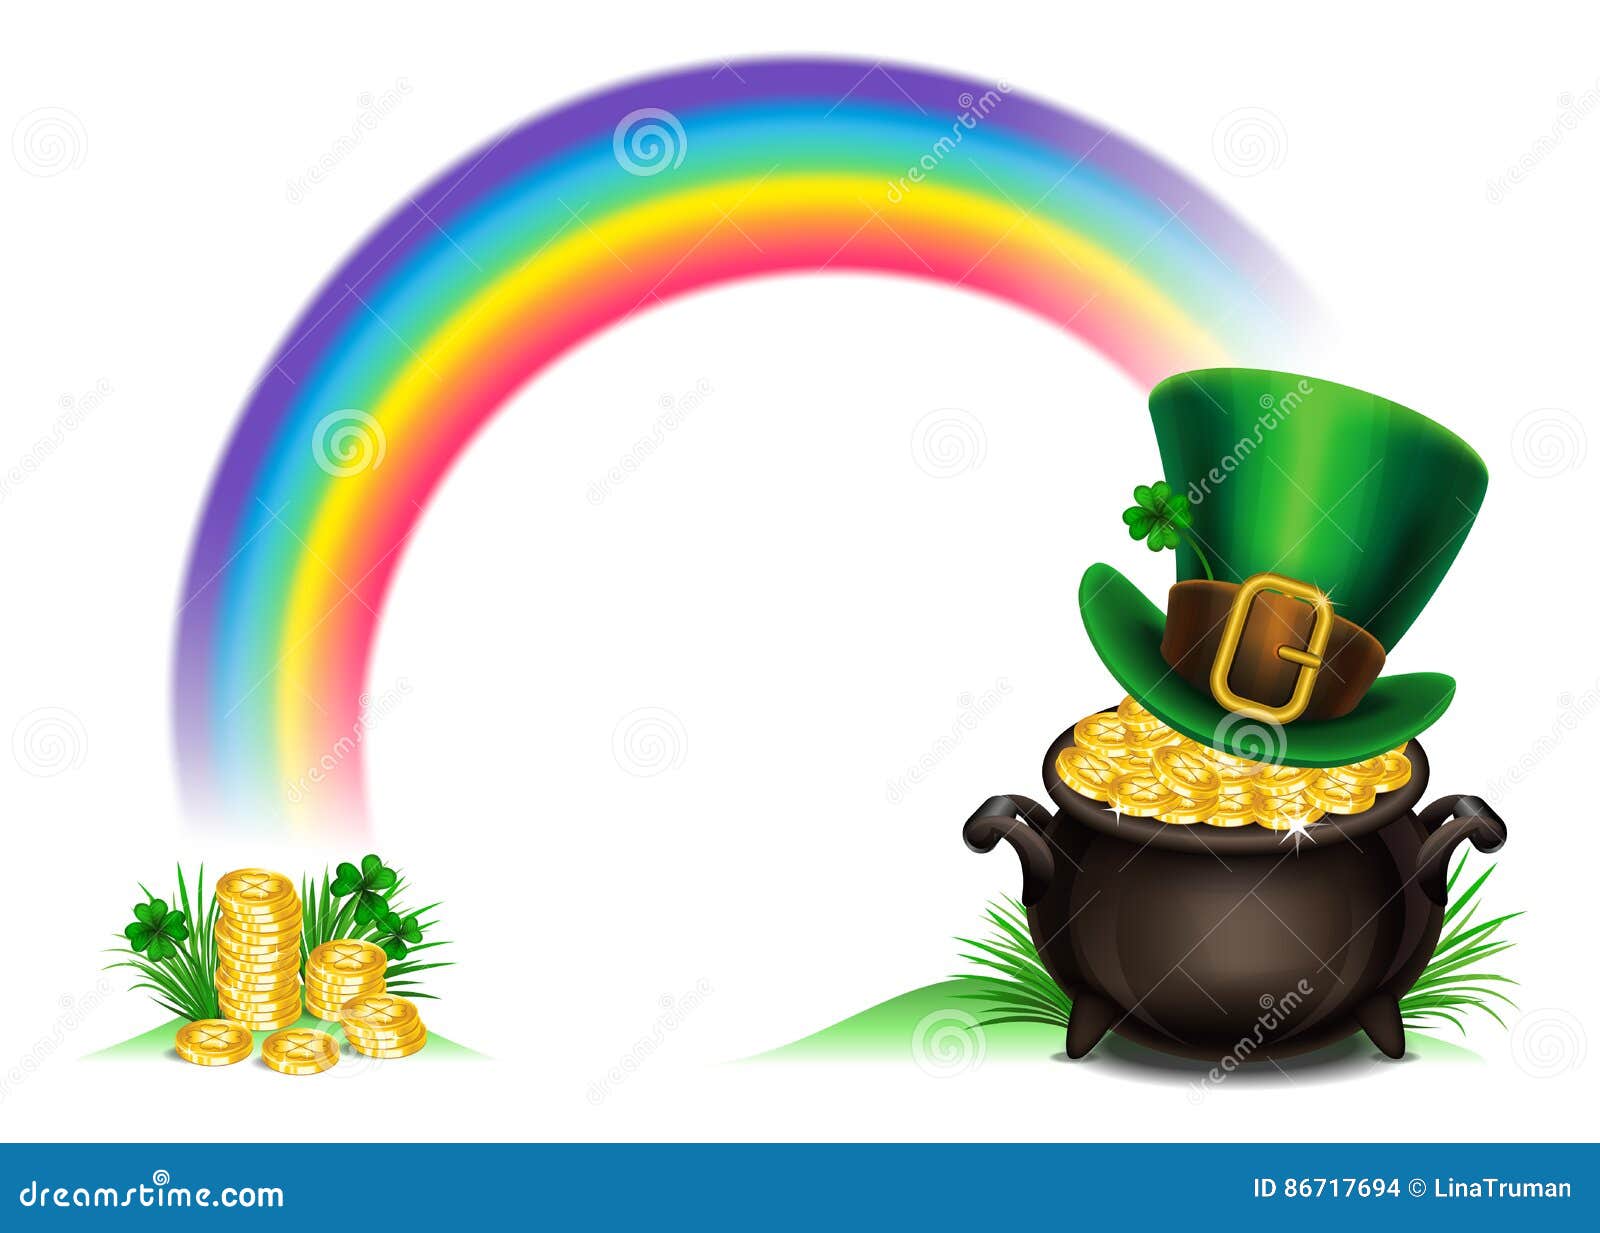 Ngày St. Patrick sắp đến rồi! Hãy đón xem hình ảnh liên quan để cùng nhau tận hưởng không khí lễ hội vui tươi và đầy may mắn trong ngày này.